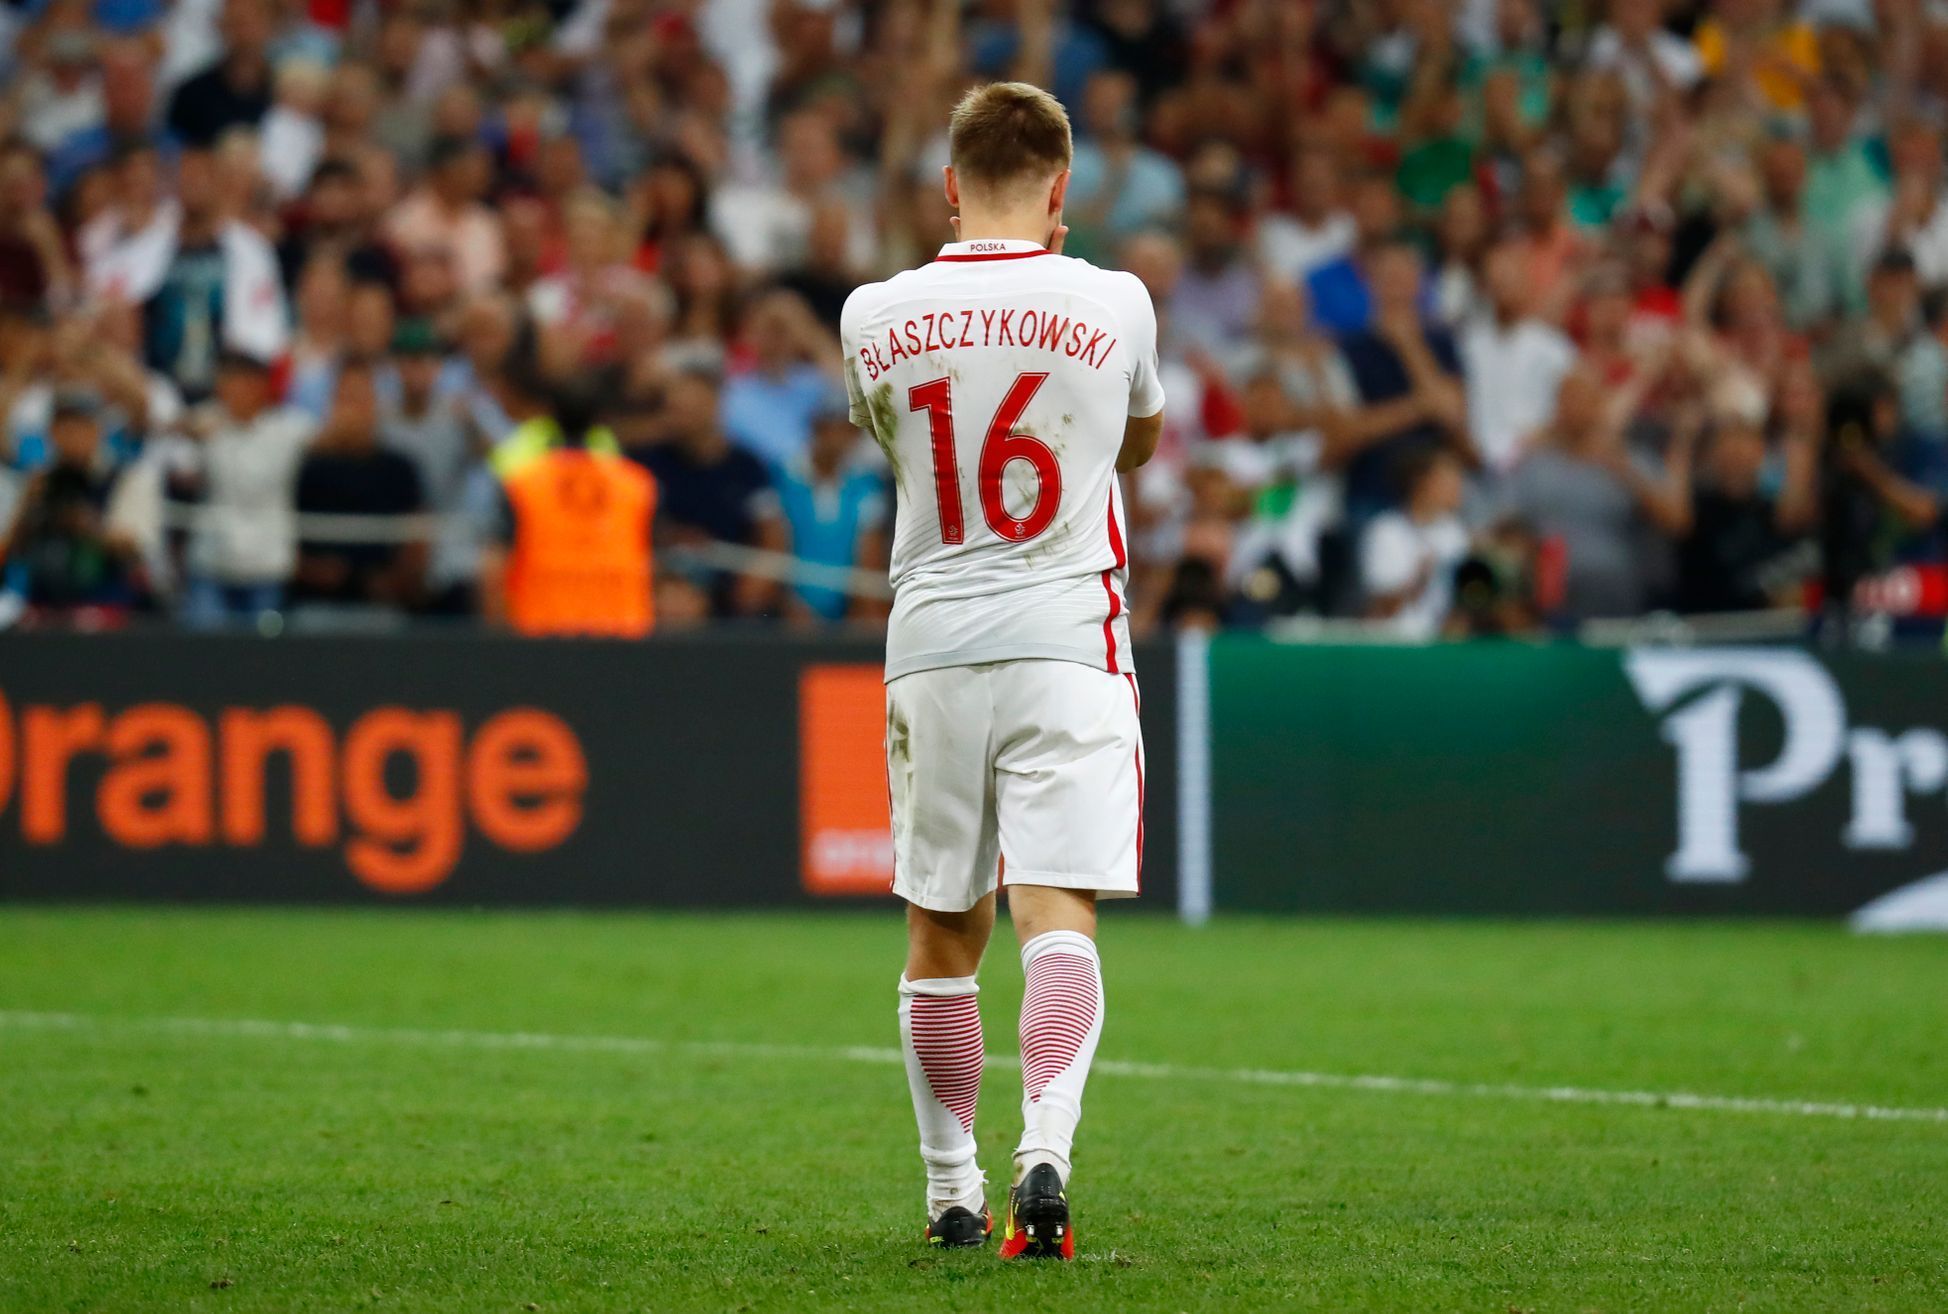 Euro 2016, Polsko-Portugalsko: Jakub Blaszczykowski pro neproměněné penaltě